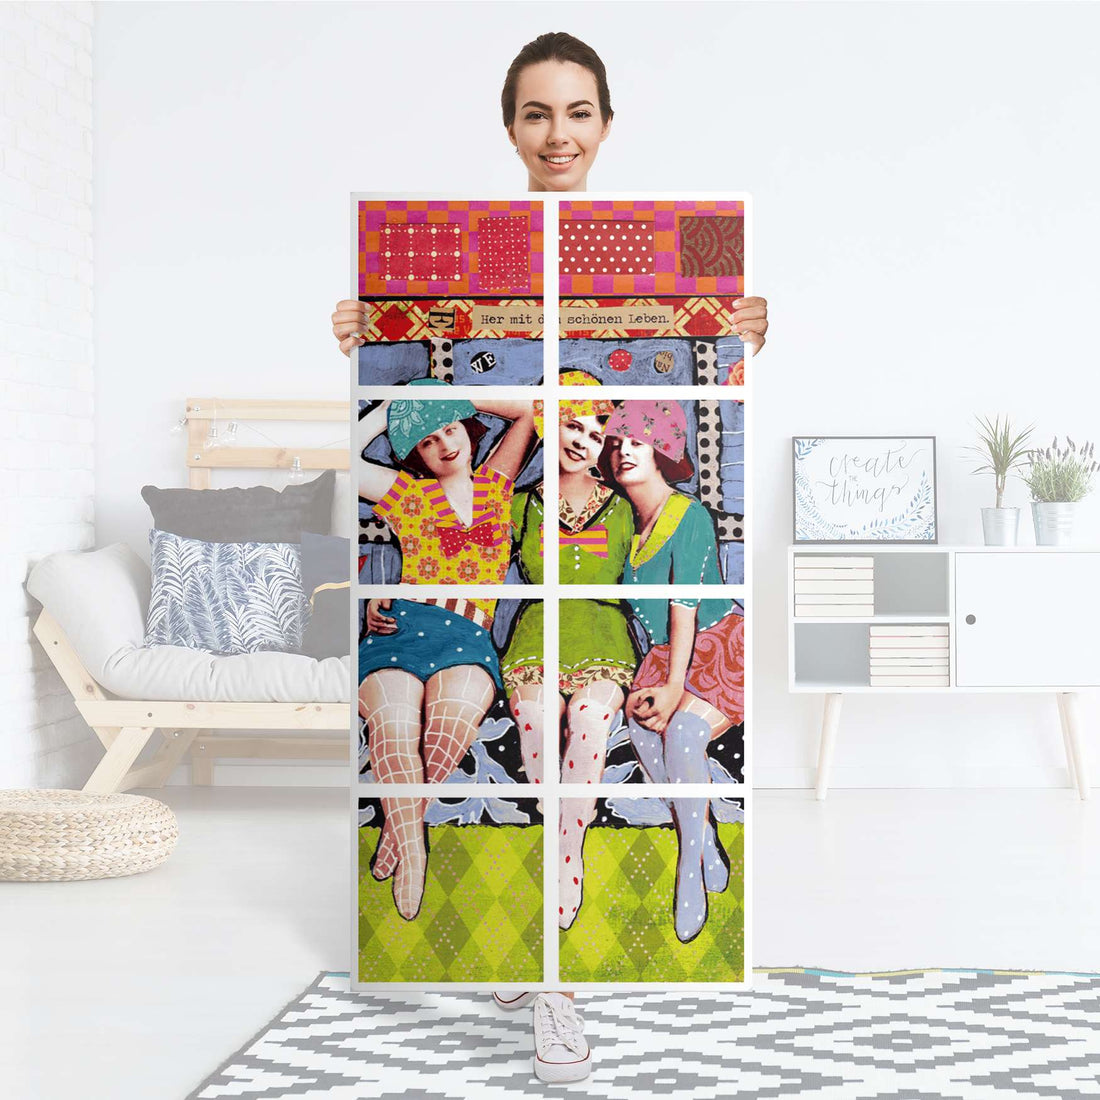 Folie für Möbel Her mit dem schönen Leben - IKEA Kallax Regal 8 Türen - Folie